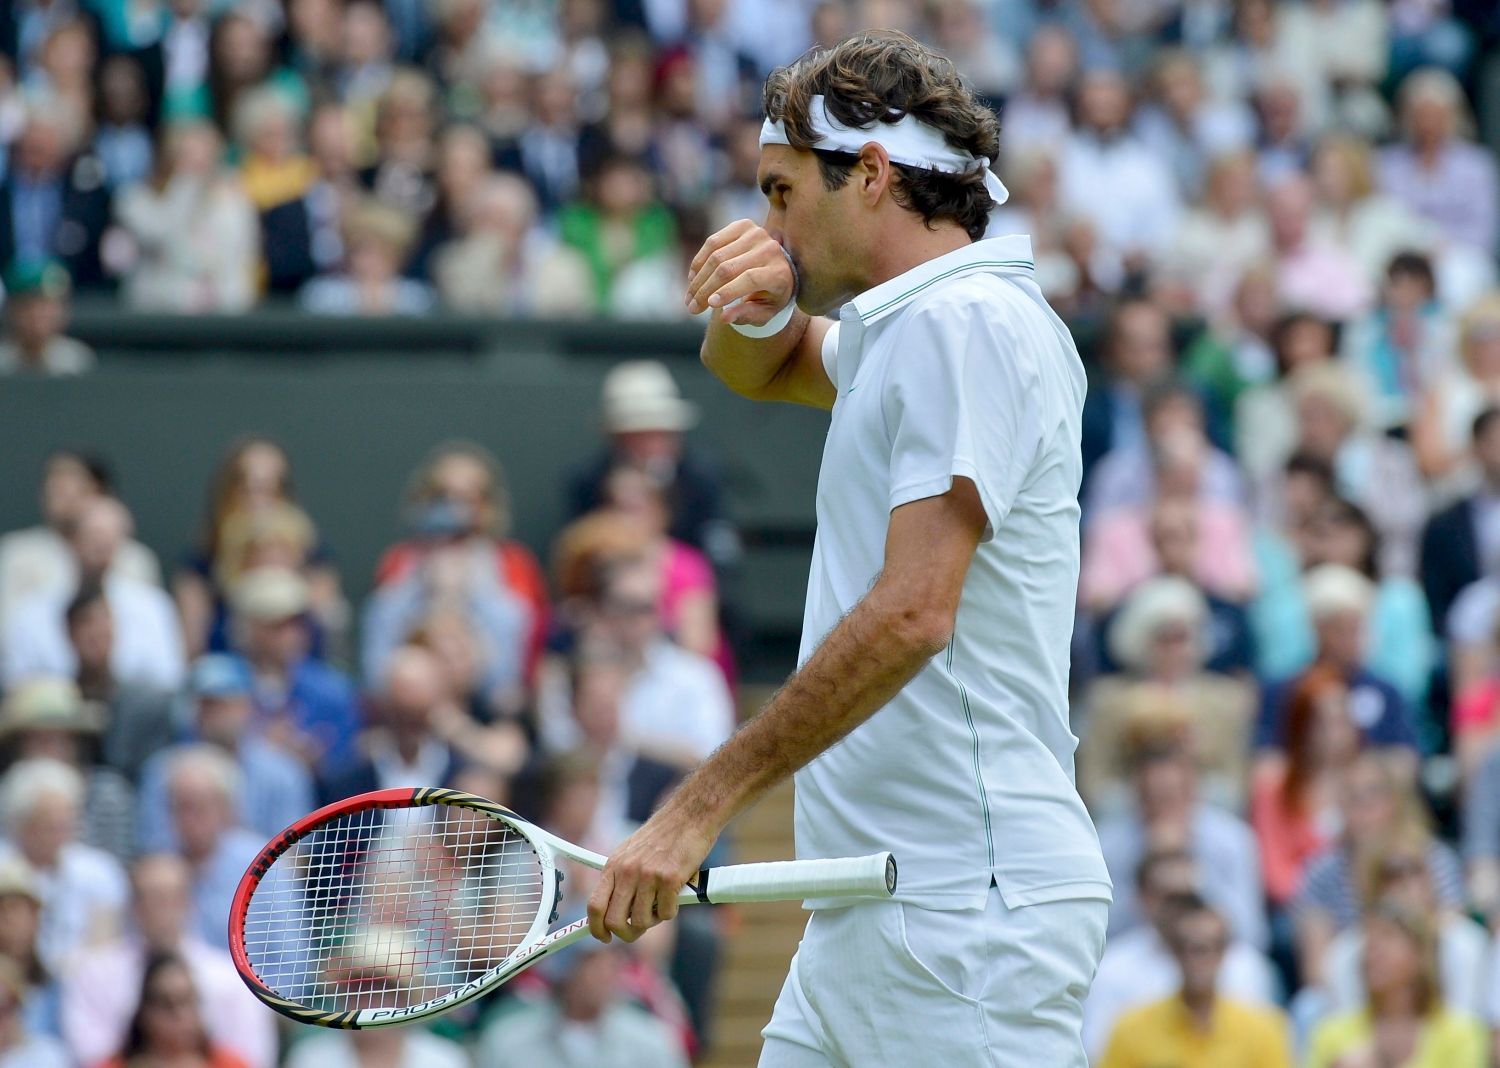 Švýcarský tenista Roger Federer se utírá během utkání s Britem Andym Murraym ve finále Wimbledonu 2012.